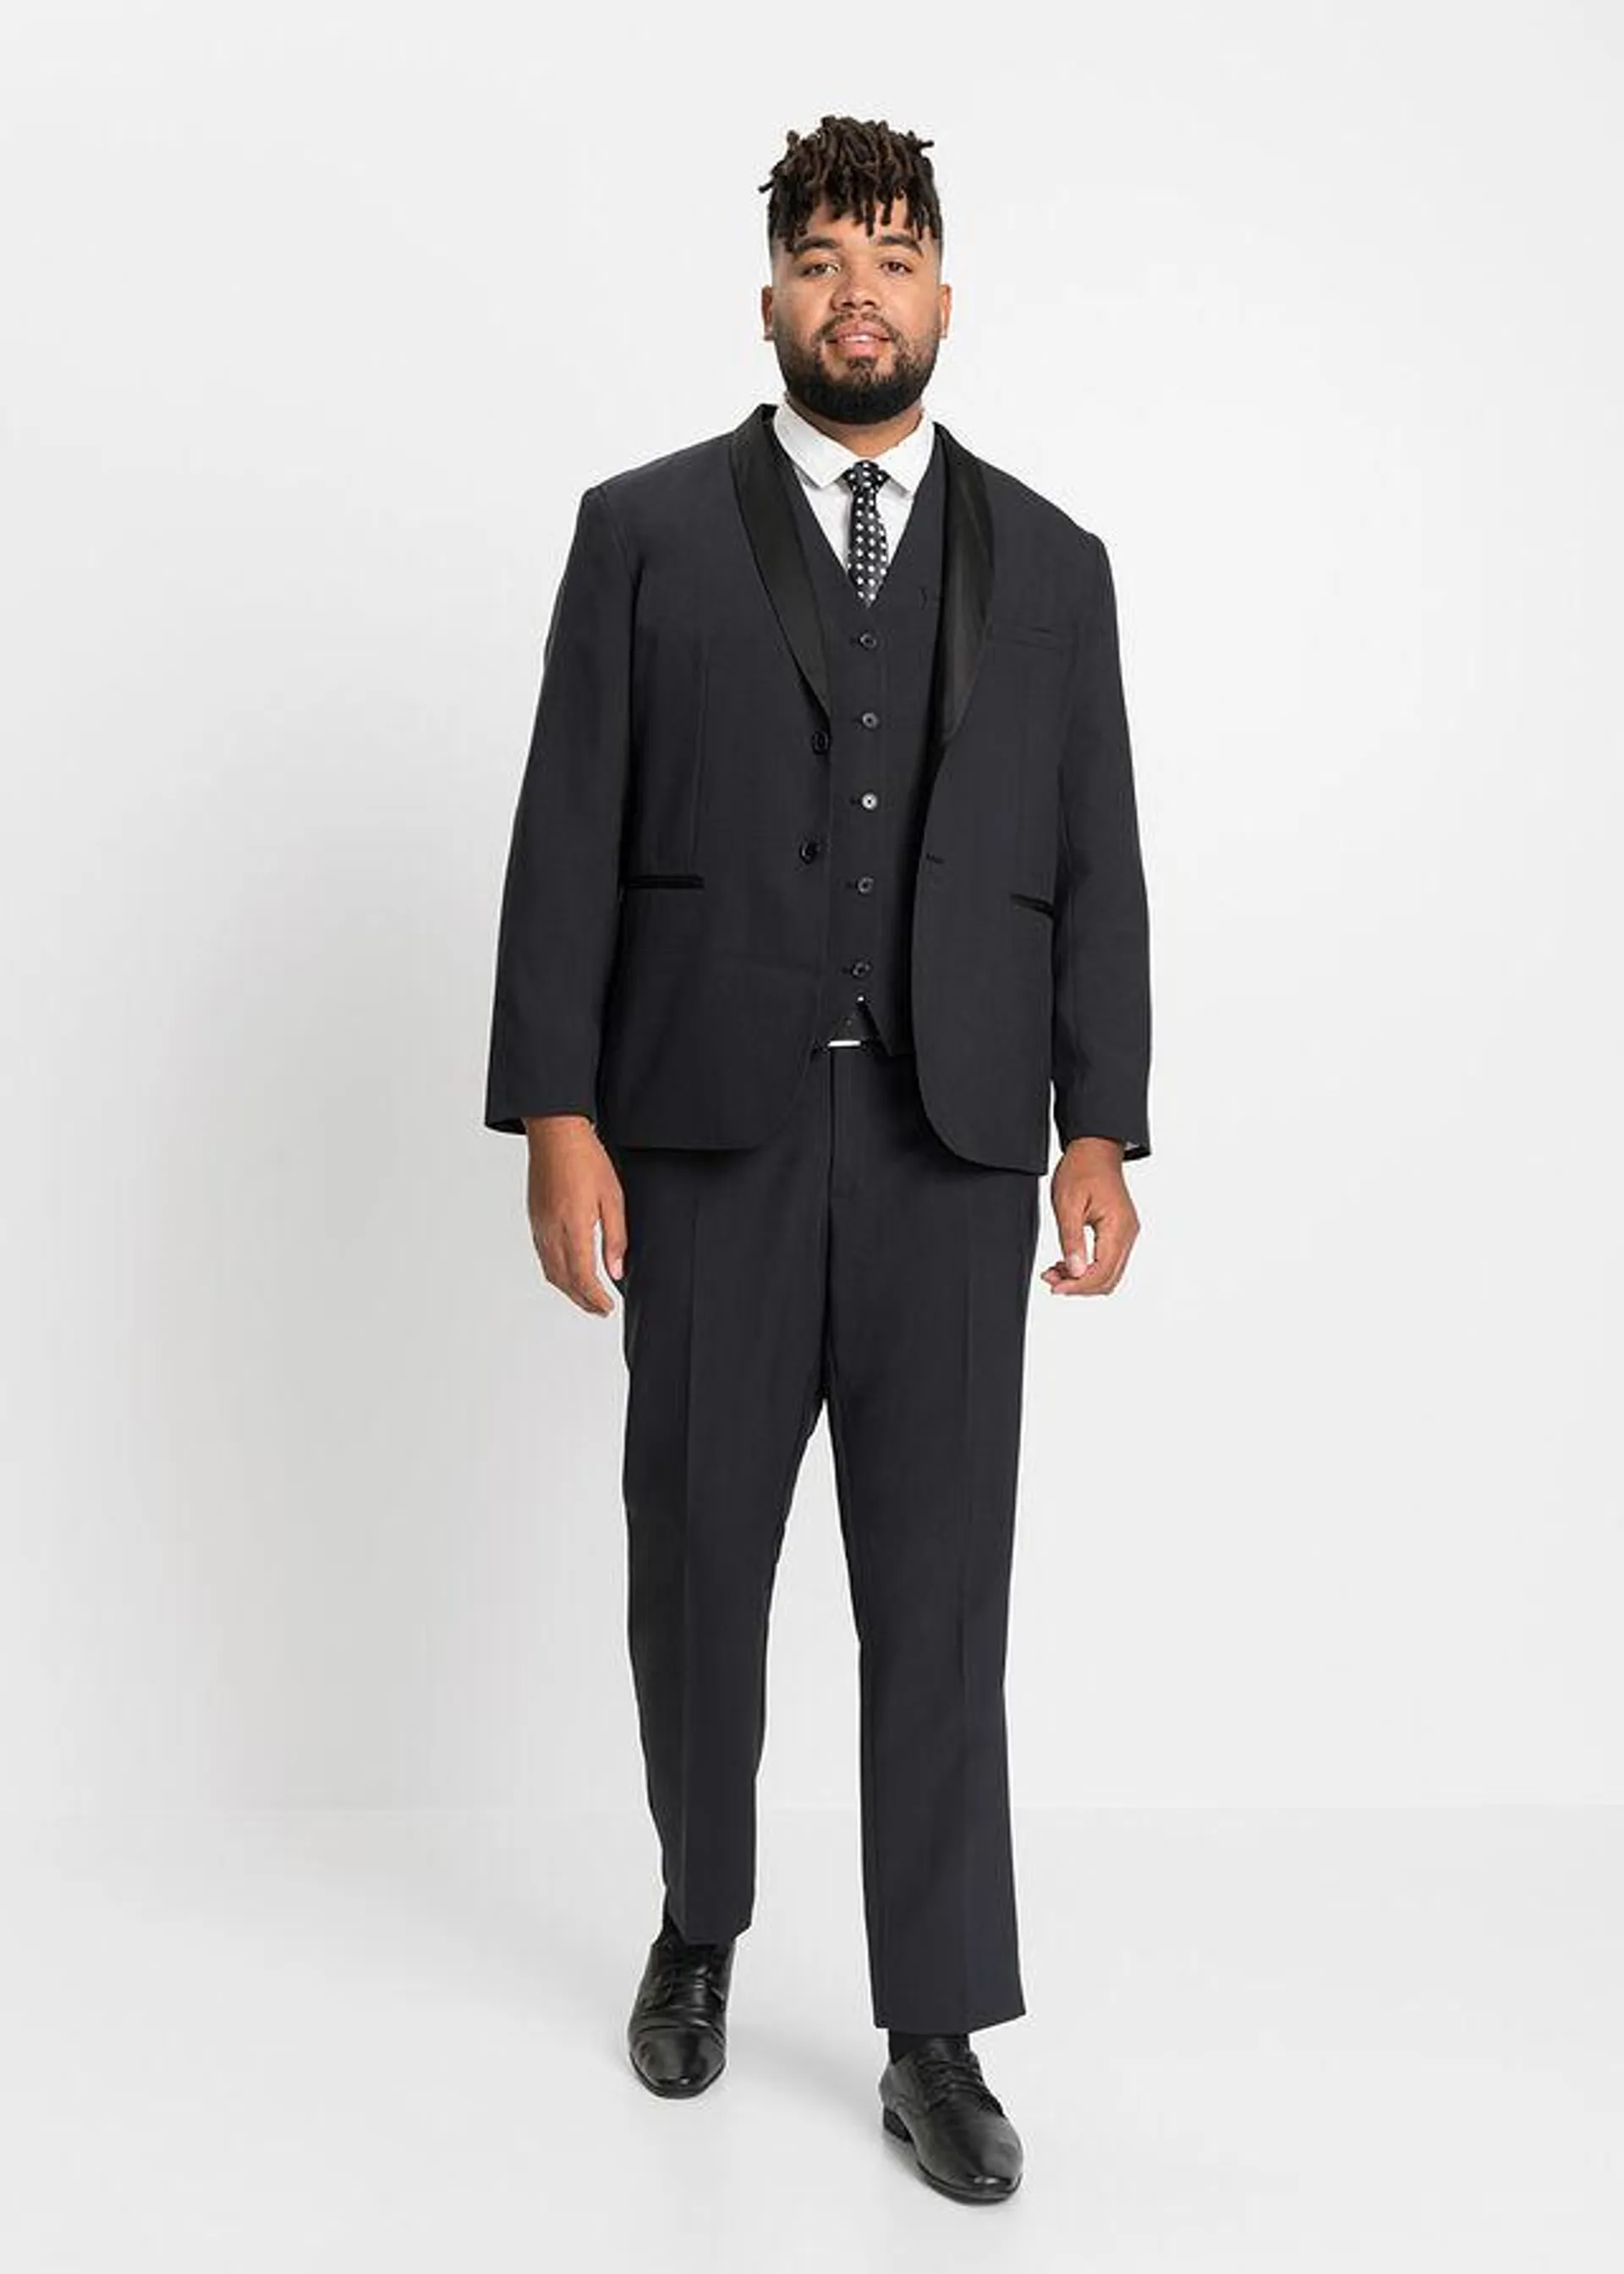 Oblek (4-dielny): sako, nohavice, vesta, kravata